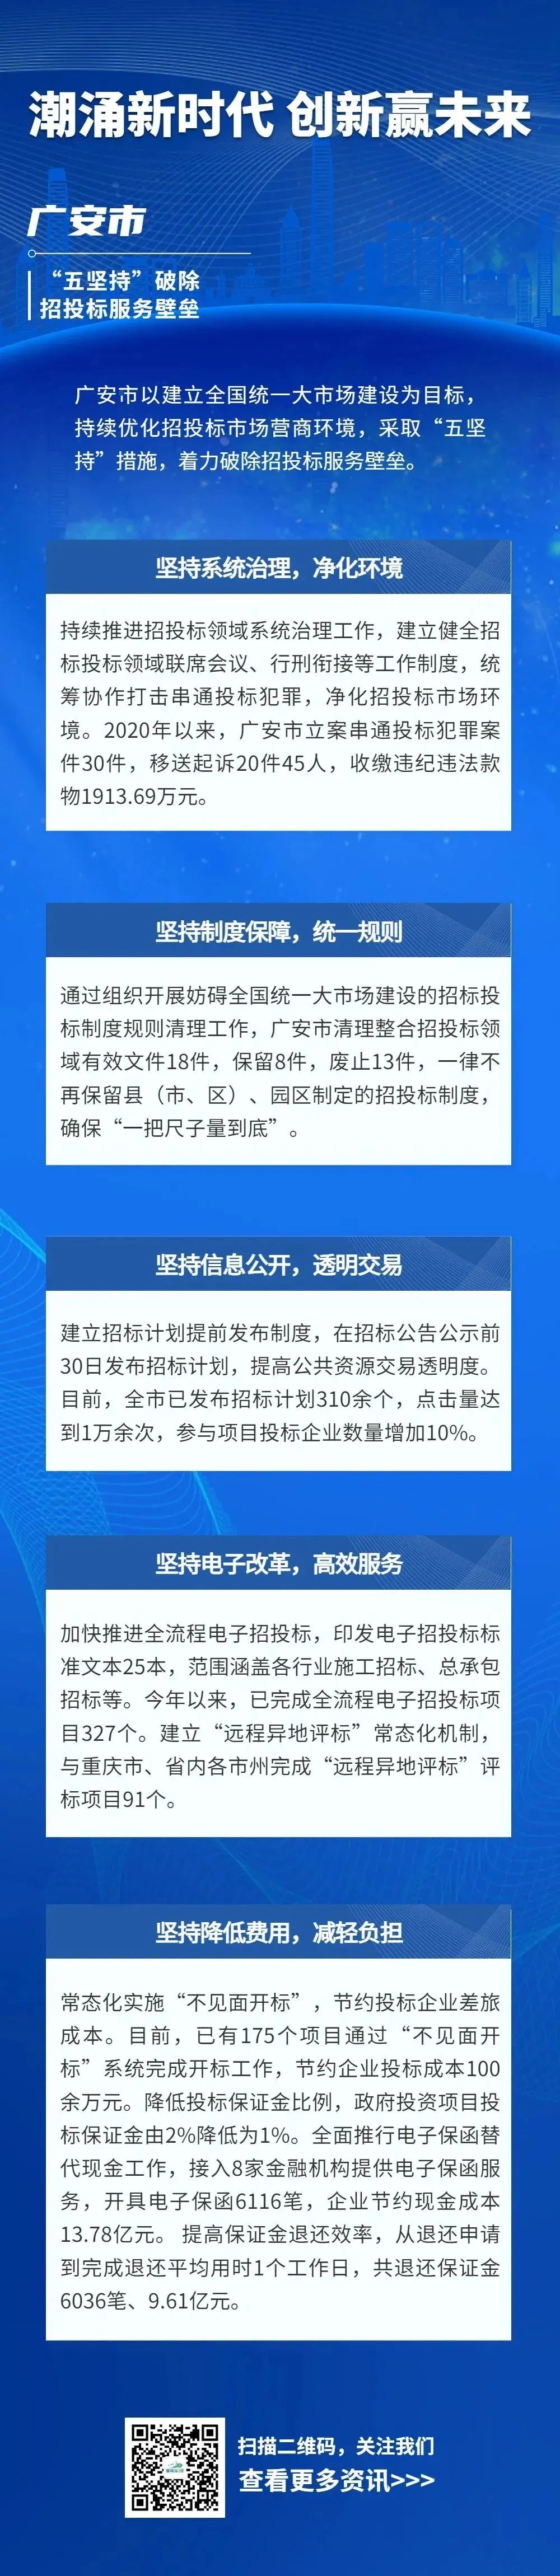 潮涌新时代 创新赢未来（28）| 广安市：“五坚持”破除招投标服务壁垒